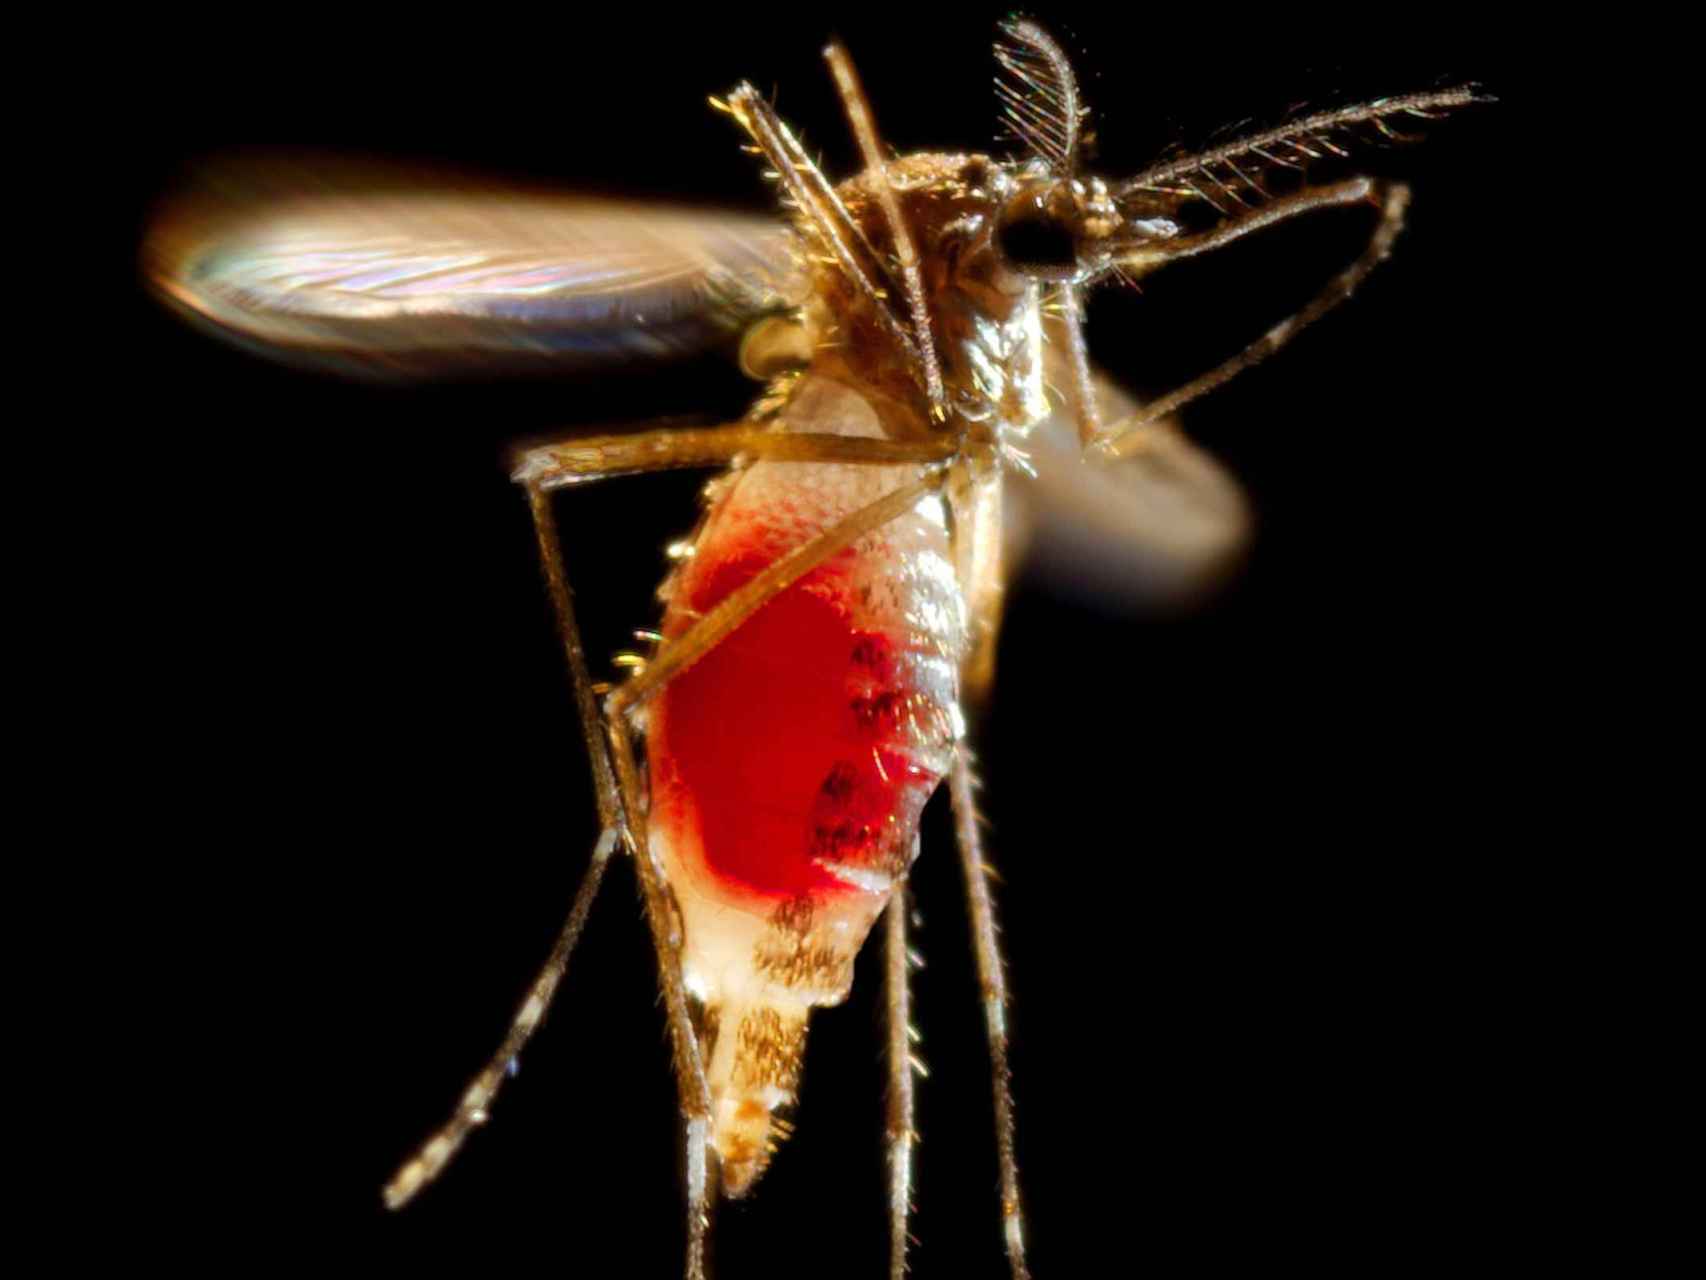 Un Aedes aegypti hembra con el abdomen lleno de sangre recién chupada.